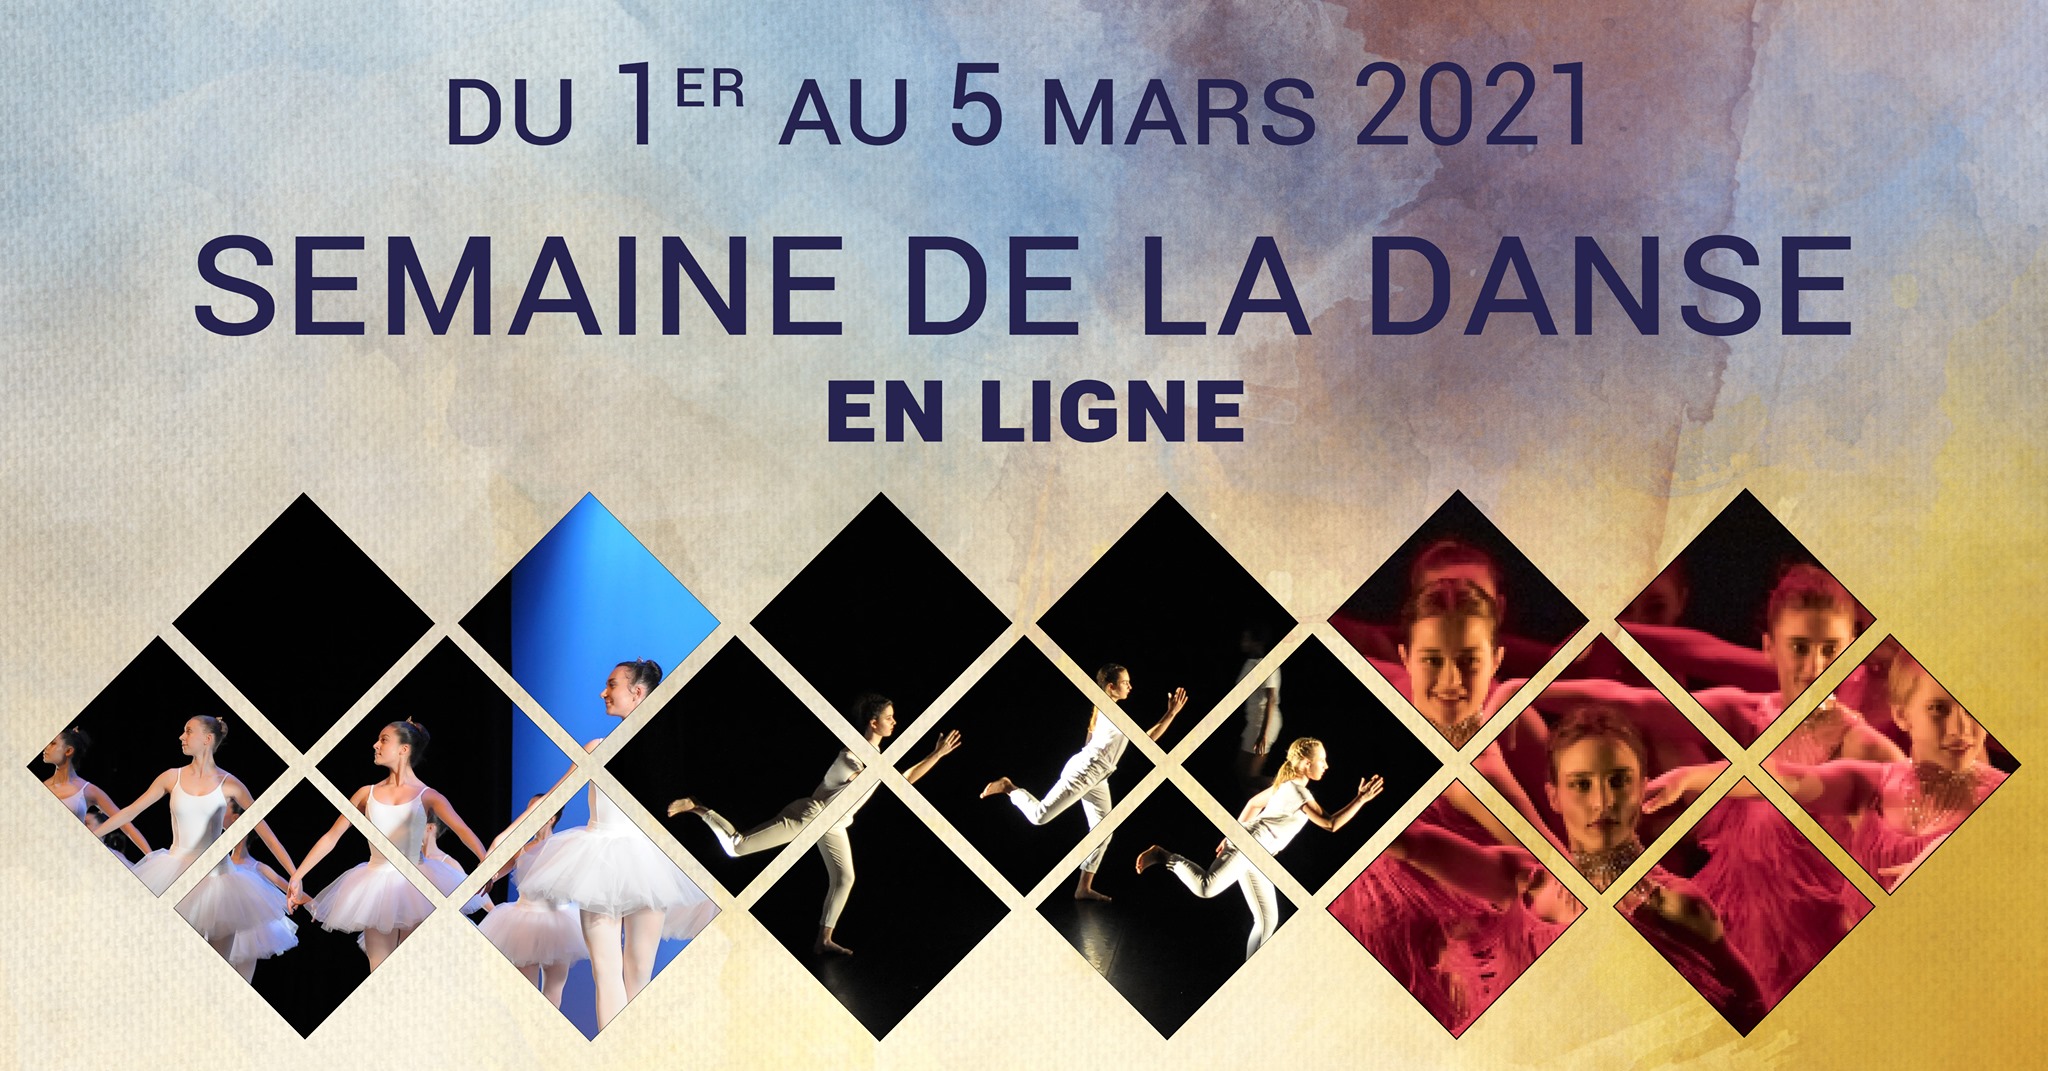 Semaine de la danse en ligne, conservatoire de Boulogne-Billancourt